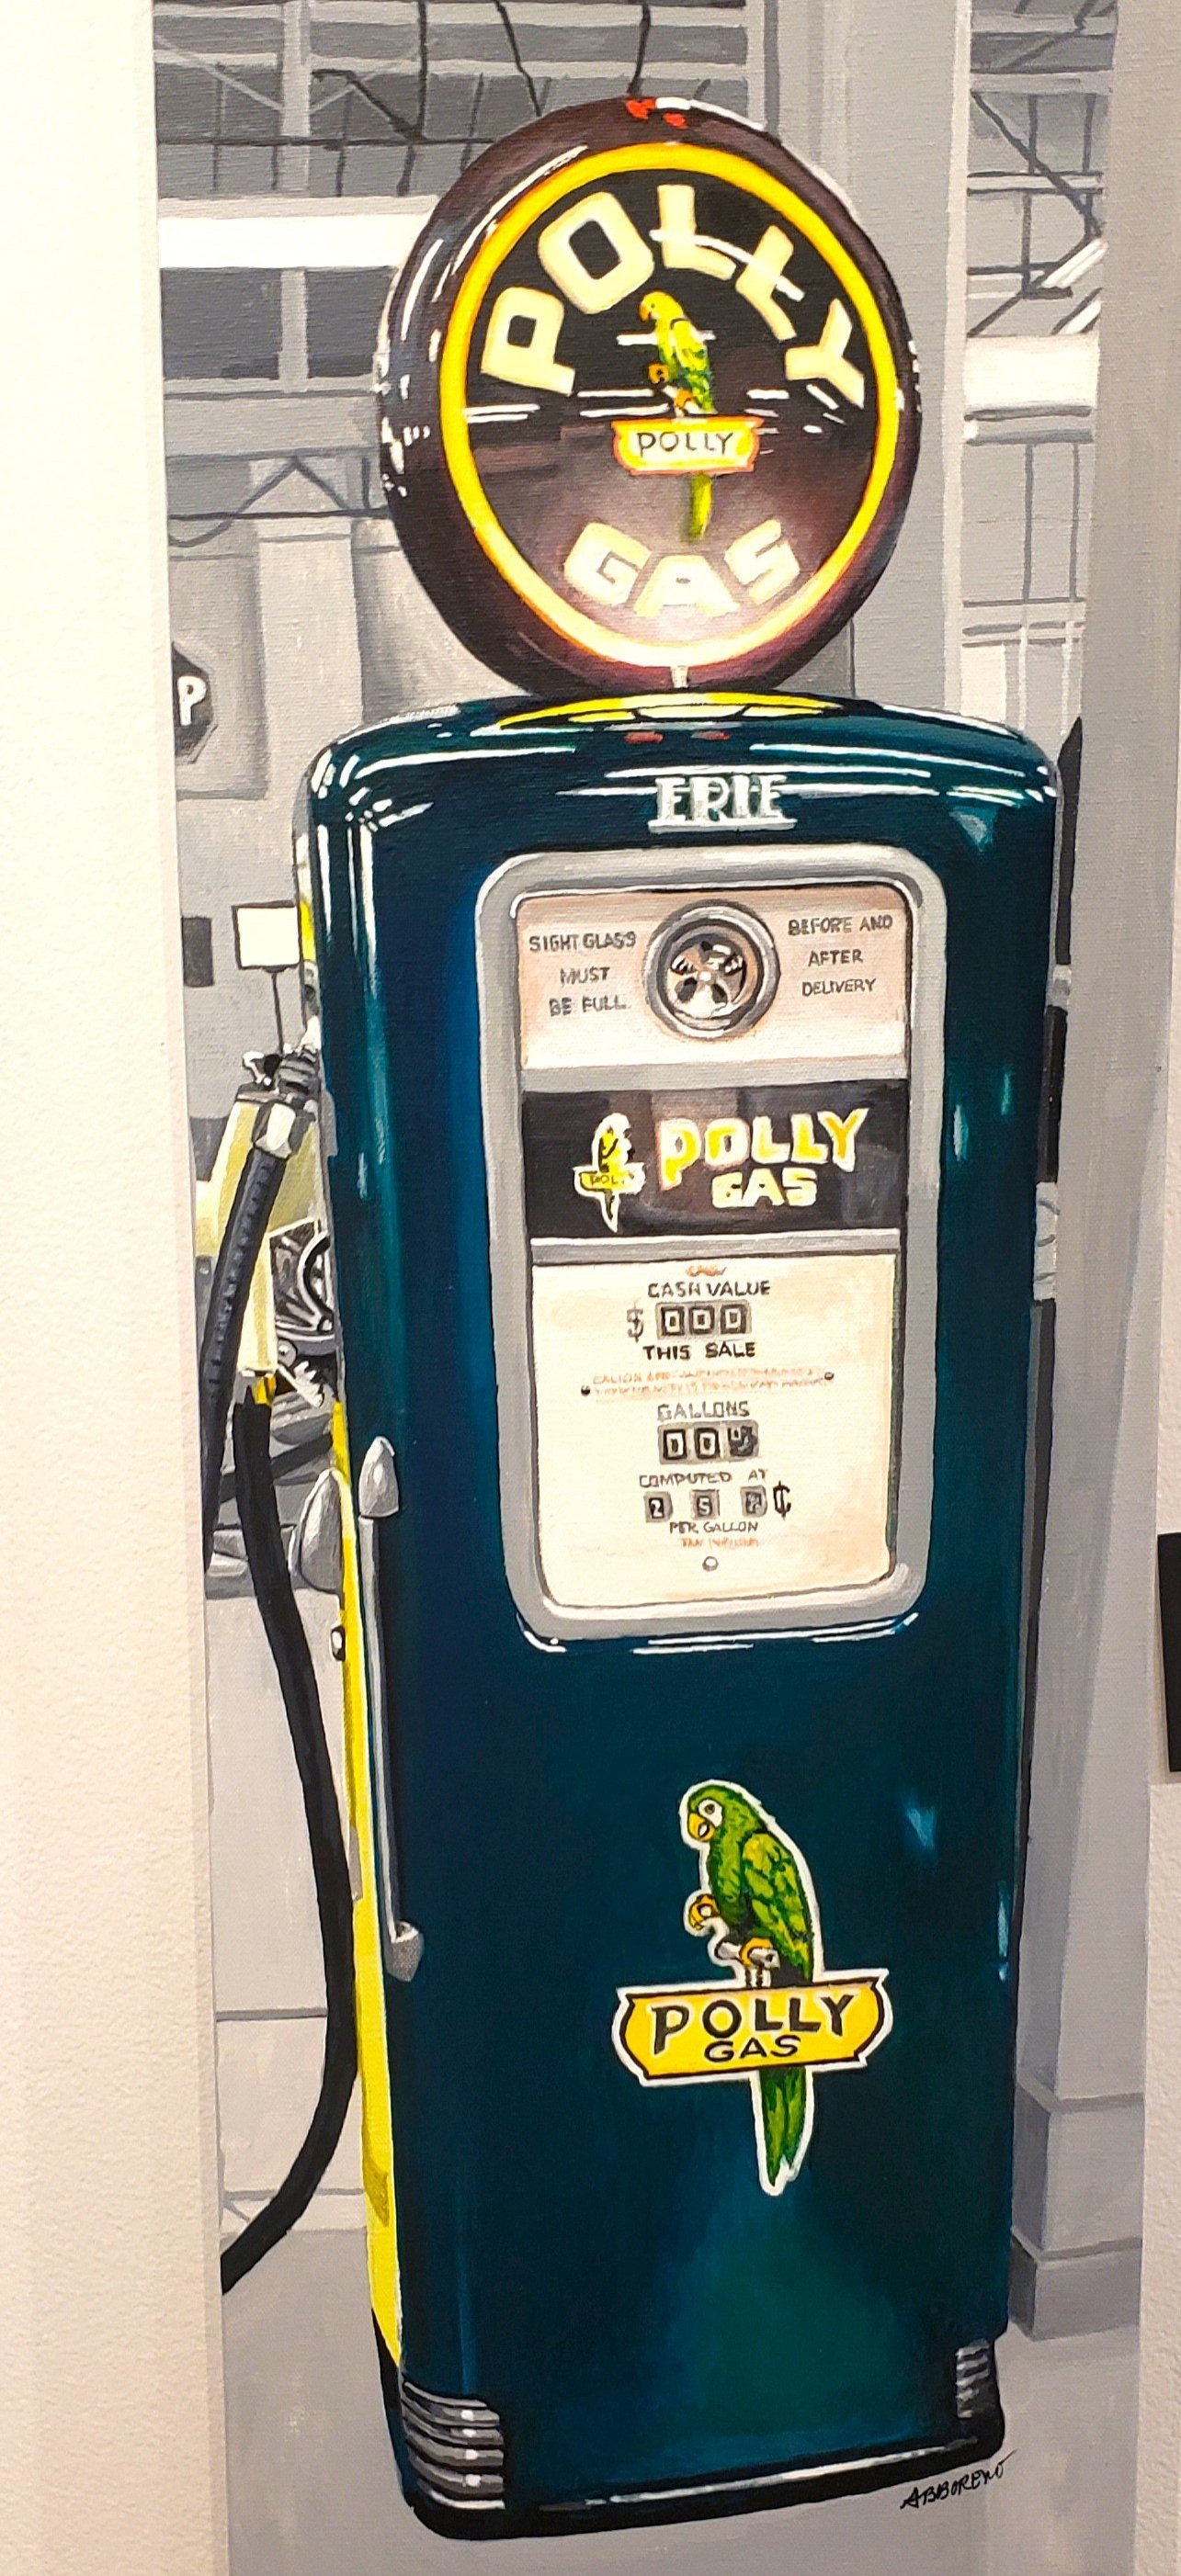 Polly gas pump.jpg